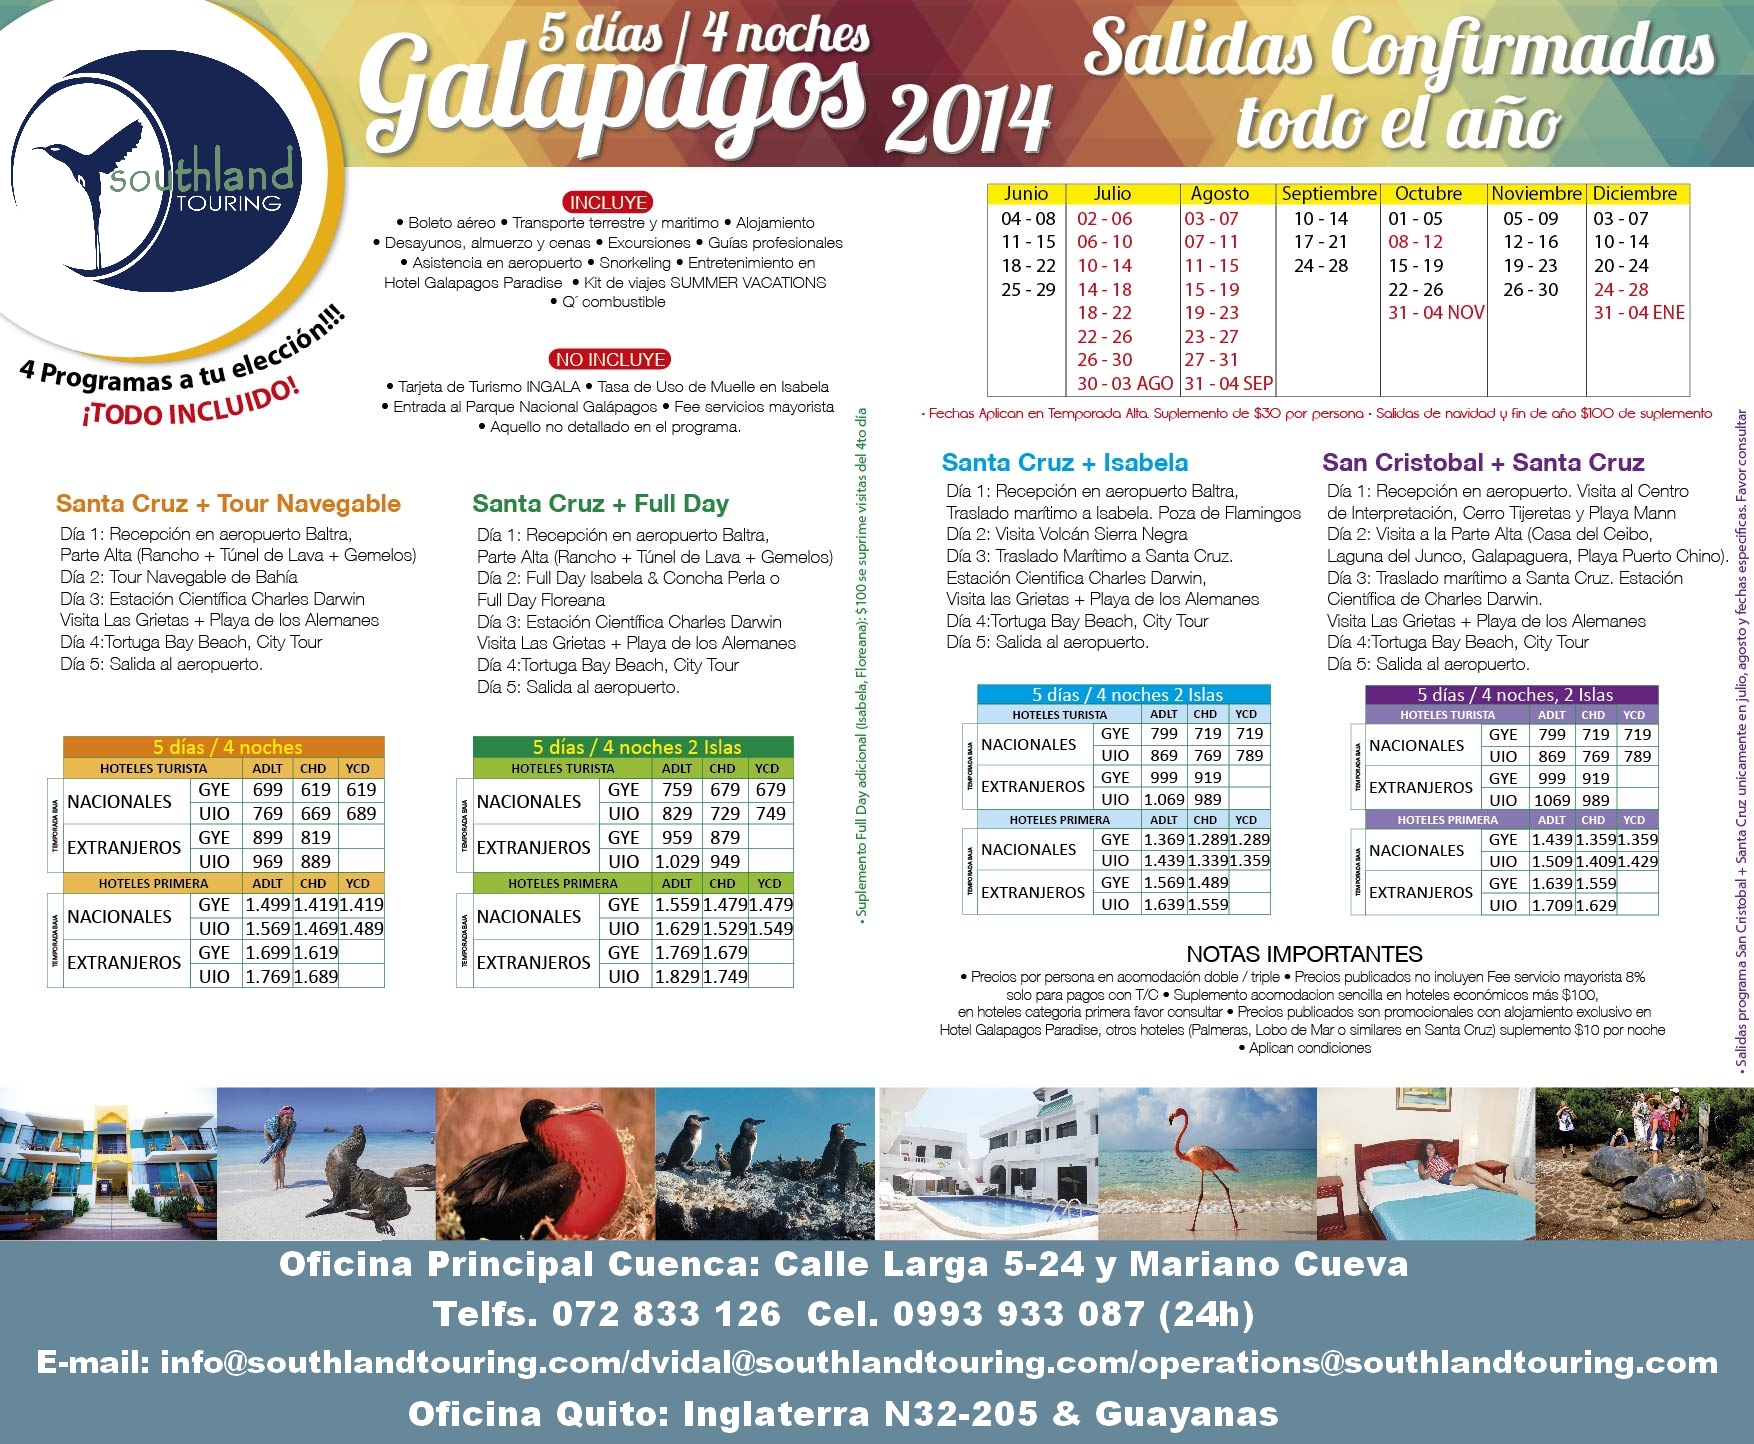 Disfruta Galapagos económico en hoteles  fantásticos.        